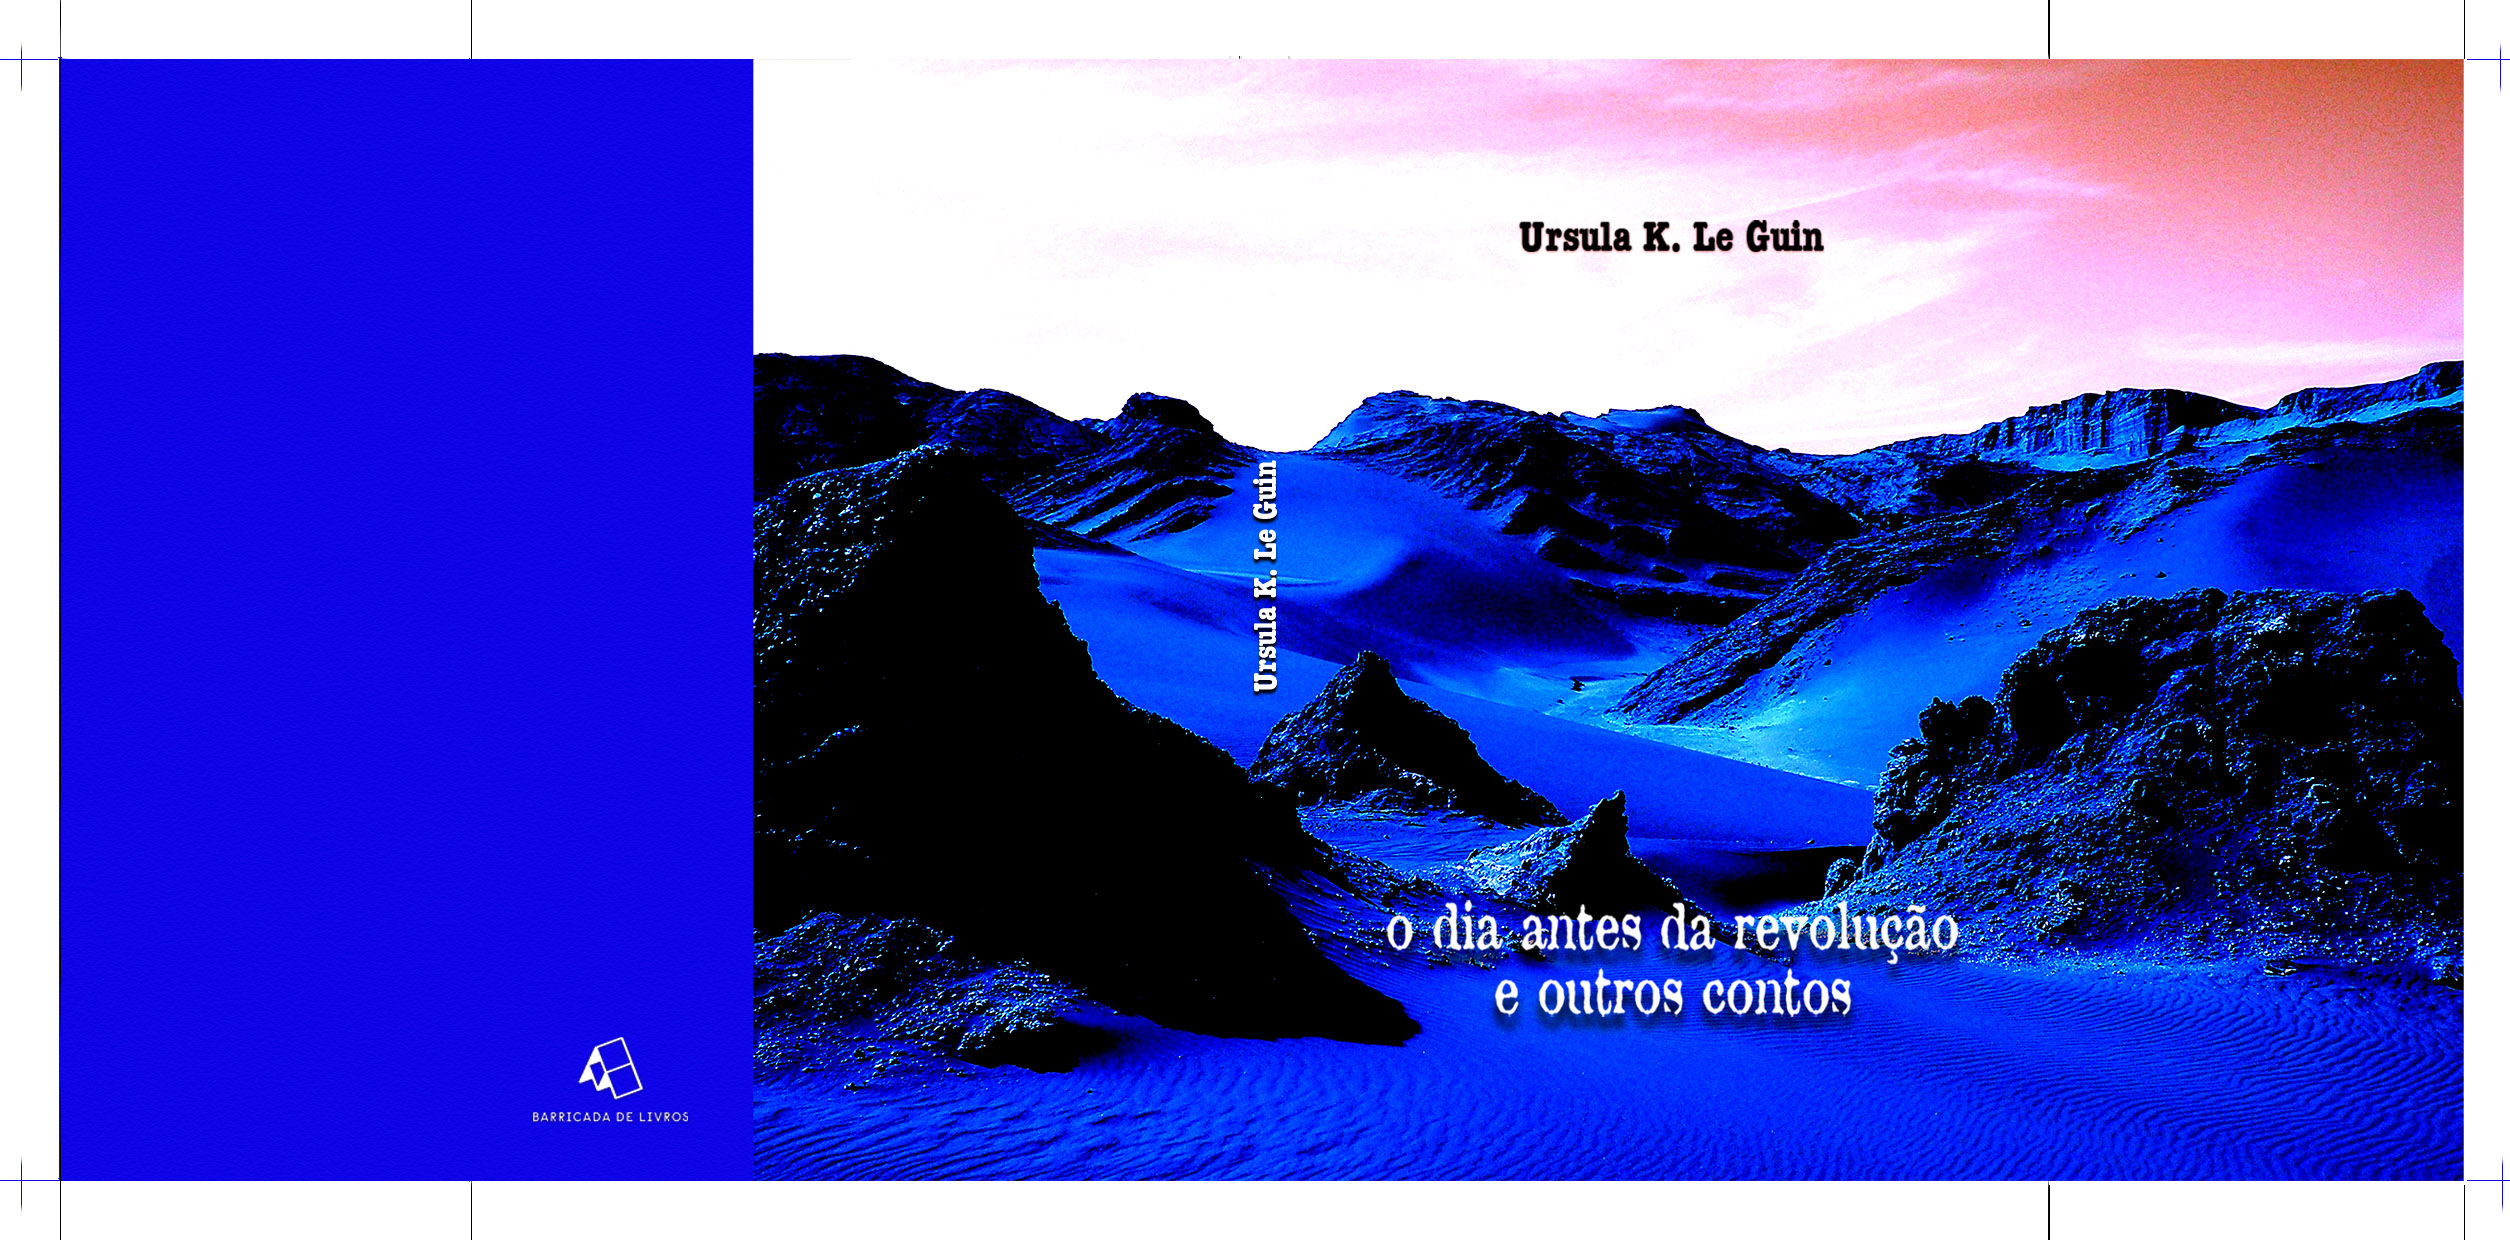 Apresentação de: O dia antes da revolução e outros contos de Ursula K. Le Guin